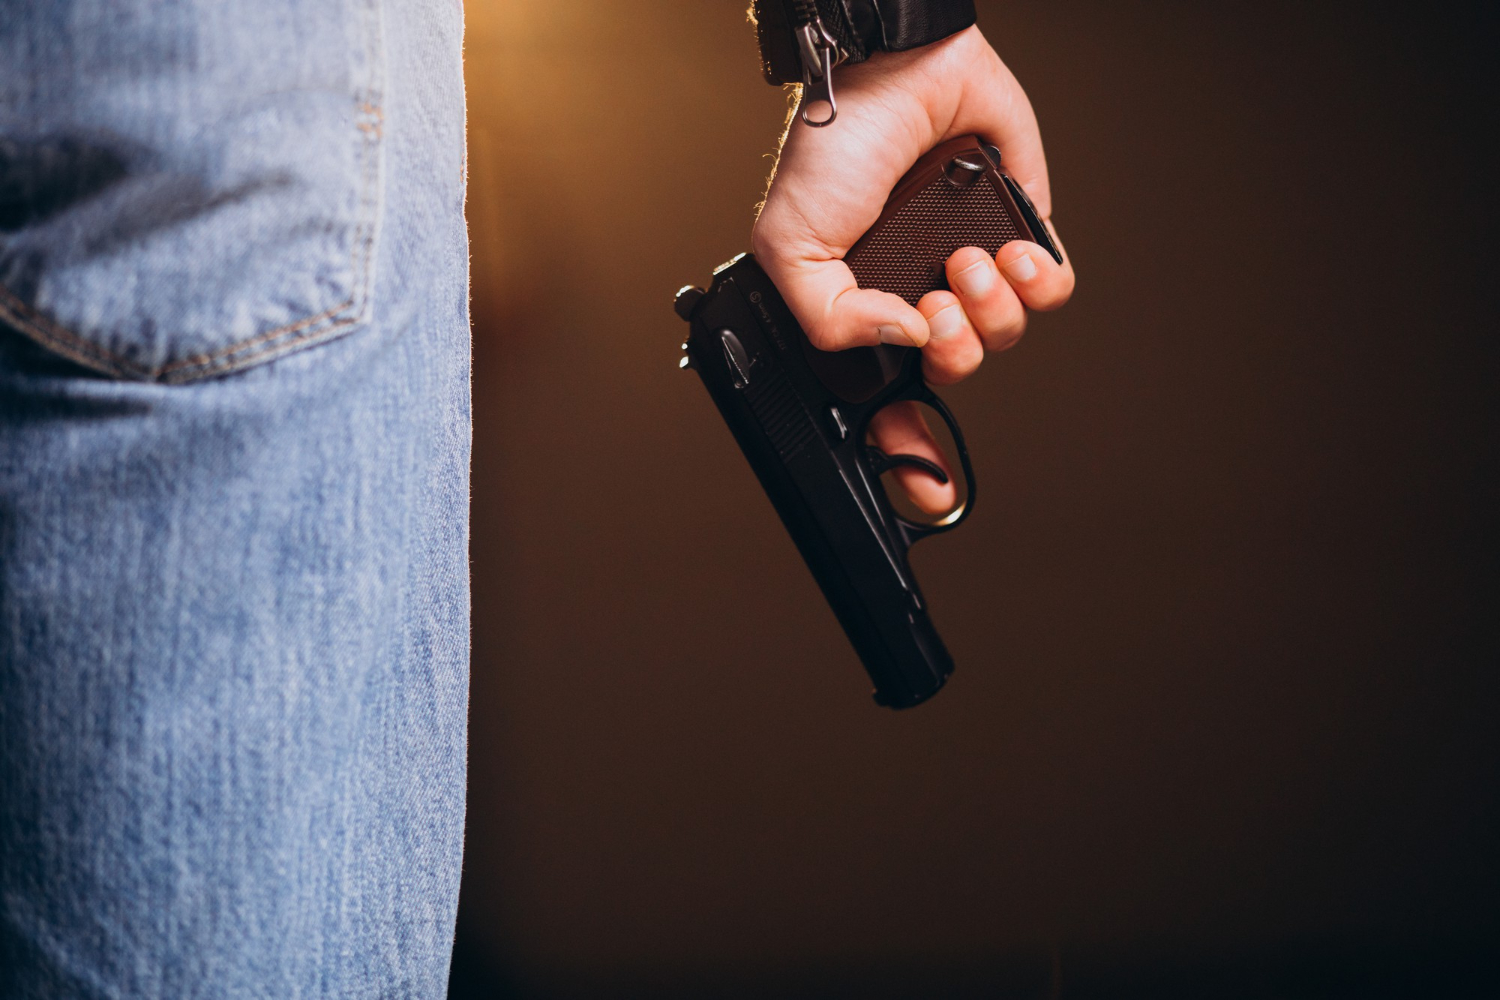 A man holding a gun